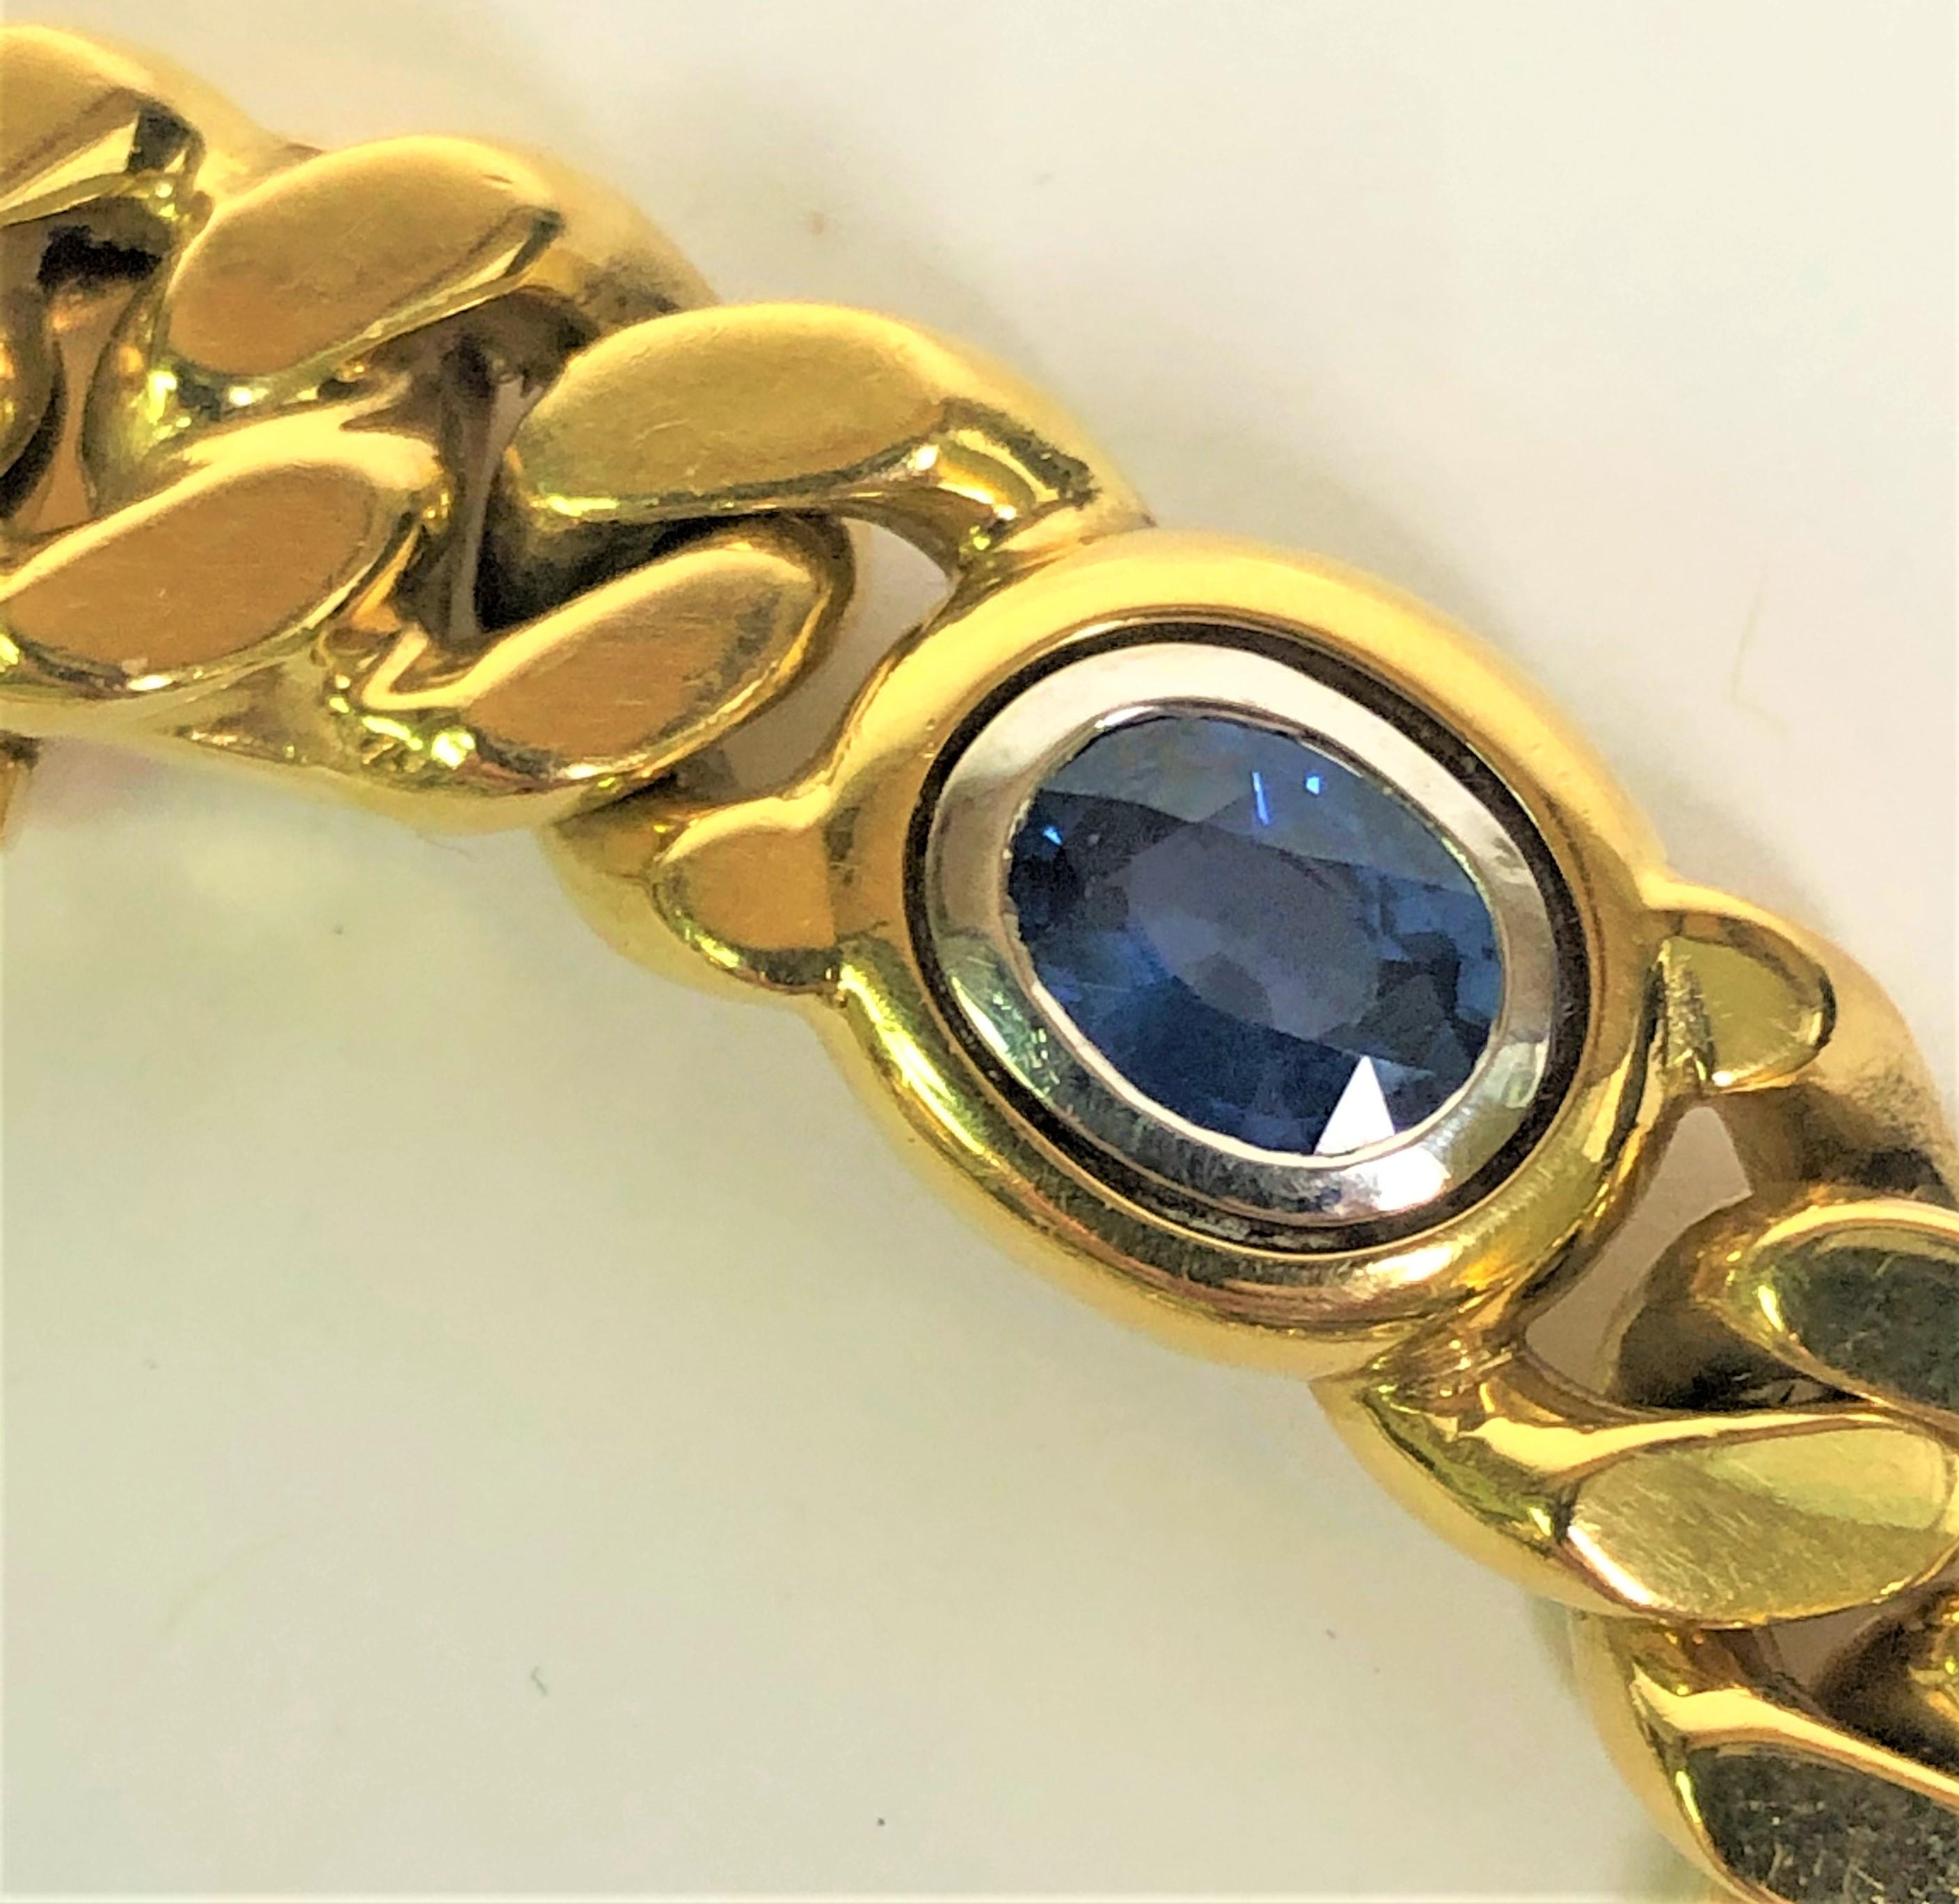 Dieses Armband des Designers Louis Fiessler ist ein Klassiker.
Polierte 18-karätige gelbe Panzerkette mit fünf ovalen Steinen in Kesselfassung.
Zwei Rubine, zwei Saphire und ein Smaragd, jeweils ca. 6 mm x 5 mm.
Ungefähr 7,75 Zoll lang und ungefähr